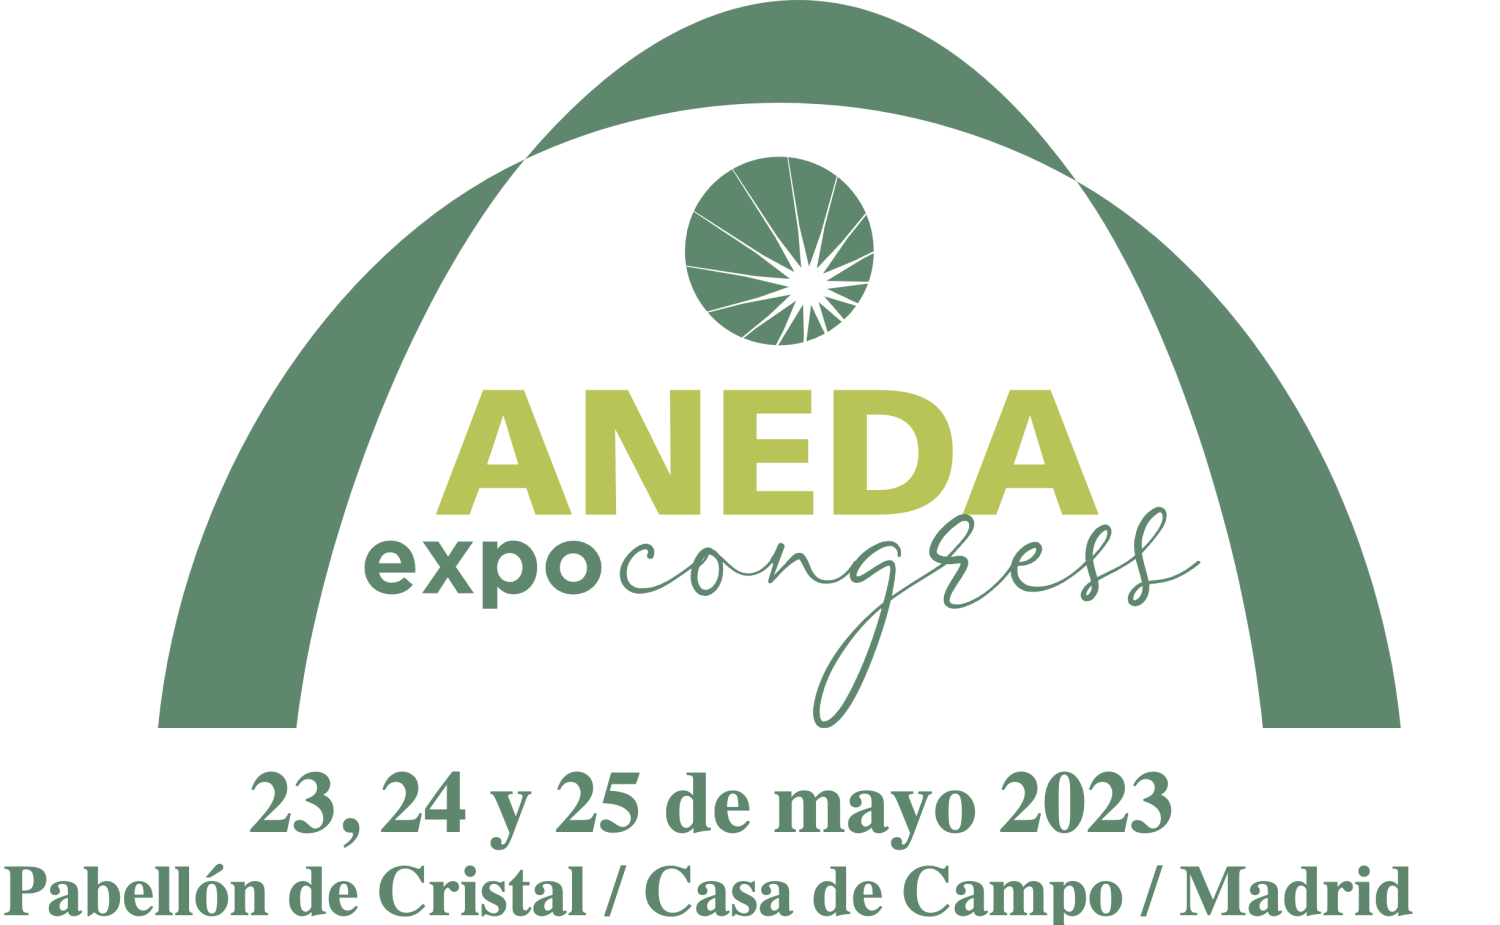 Aneda ExpoCongress trade fair invitation!